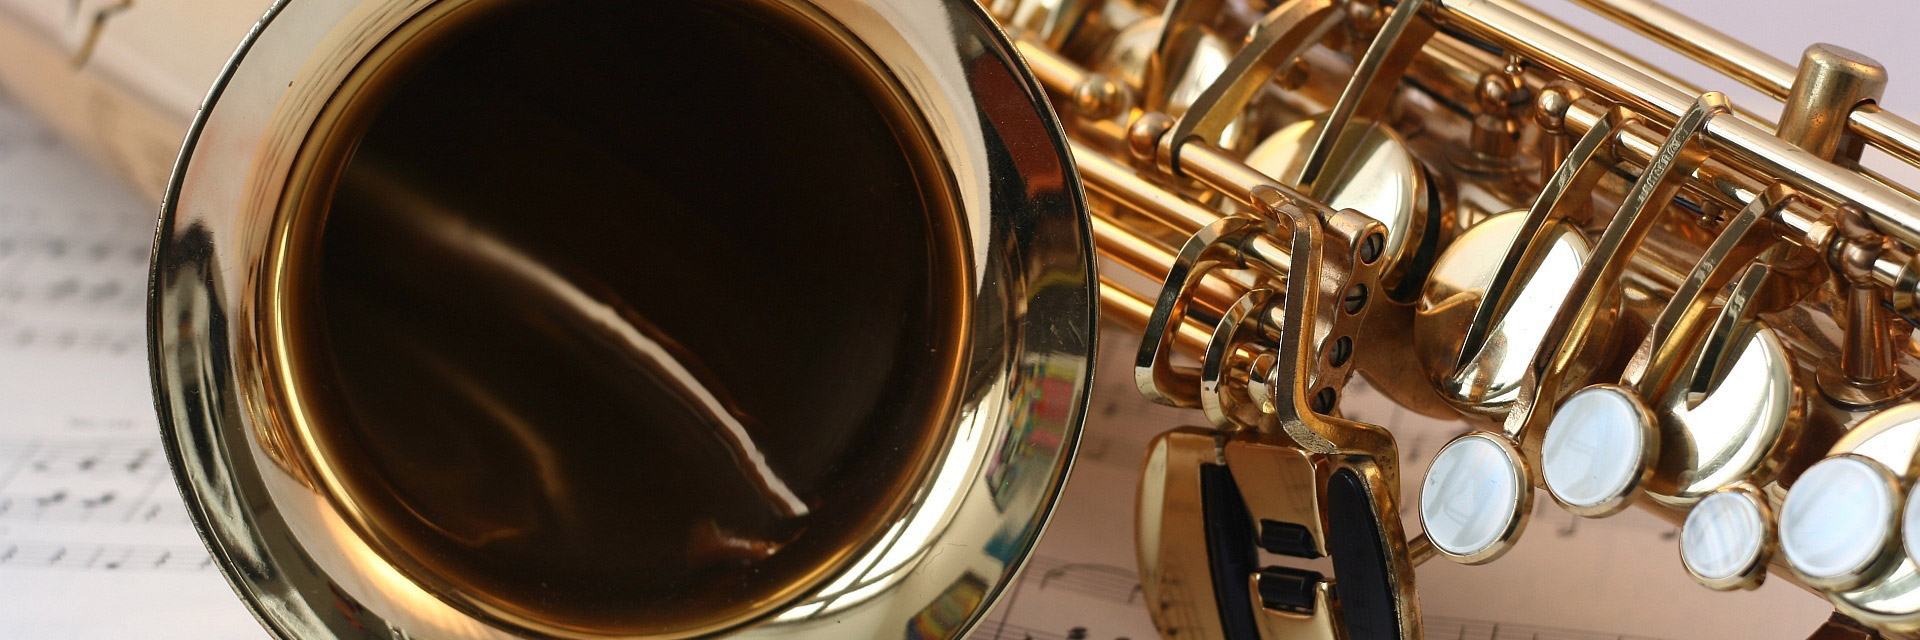 saxophone-546303.jpg